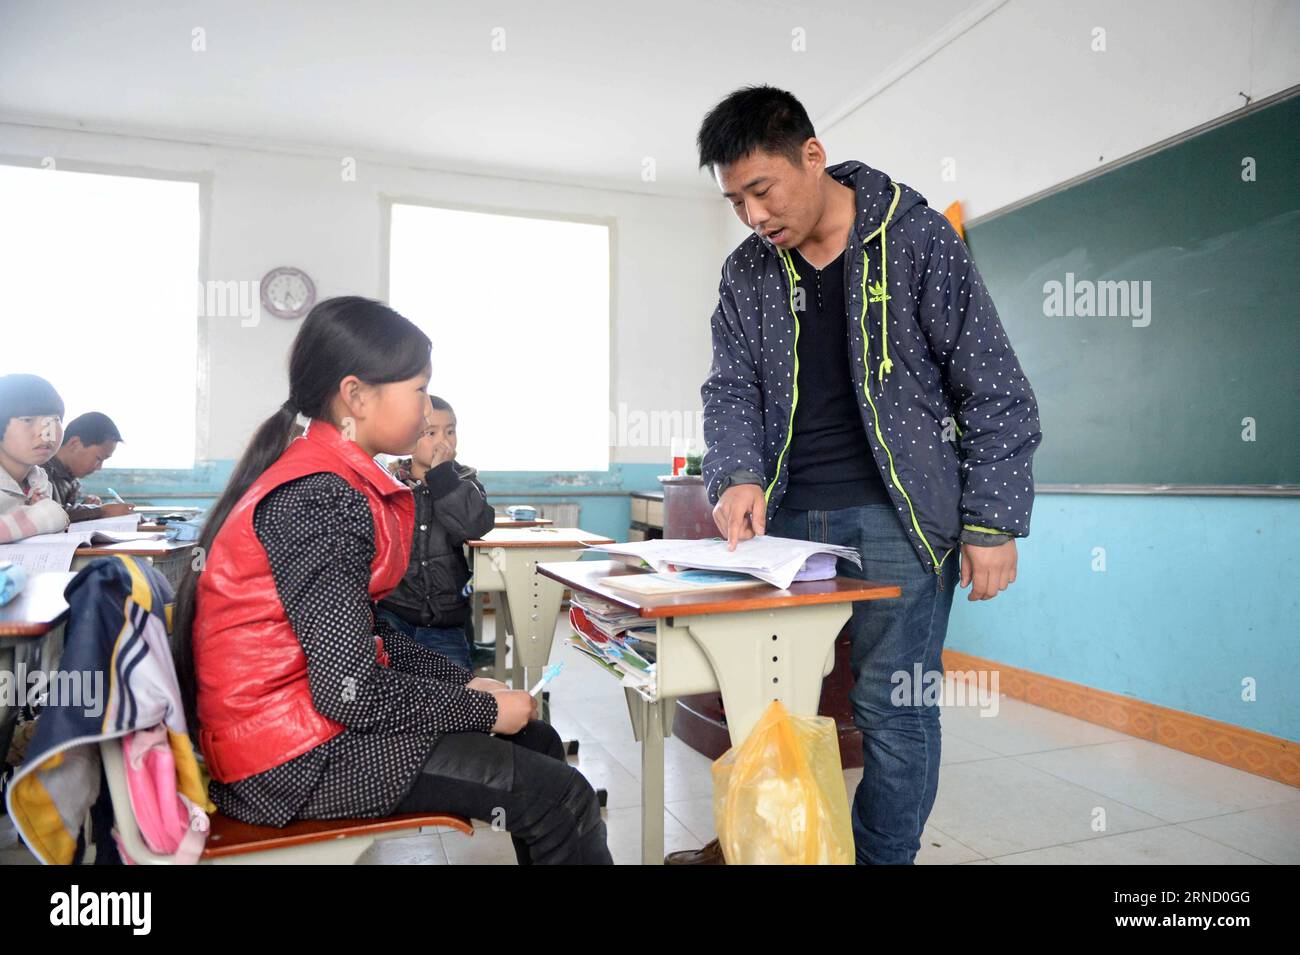 MOHE, 26. April 2016 -- Wang Zhonkä (R), Schulleiter der Beihong Elementary School, führt einen Schüler an die Beihong Elementary School im Beihong Village der Gemeinde Beiji im Mohe County, dem nördlichsten County Chinas, Provinz Heilongjiang im Nordosten Chinas, am 26. April 2016. Die Beihong Elementary School, Chinas nördlichste Grundschule, hat nur zwei Lehrer und 15 Schüler. Die beiden Lehrer, Wang Zhonkä und Yu Jing, sind ein Paar, das seit Jahren hier ist. ) (lfj) CHINA-HEILONGJIANG-NÖRDLICHSTE GRUNDSCHULE (CN) WangxKai PUBLICATIONxNOTxINxCHN Mohe April 26 2016 Wang ZH Stockfoto